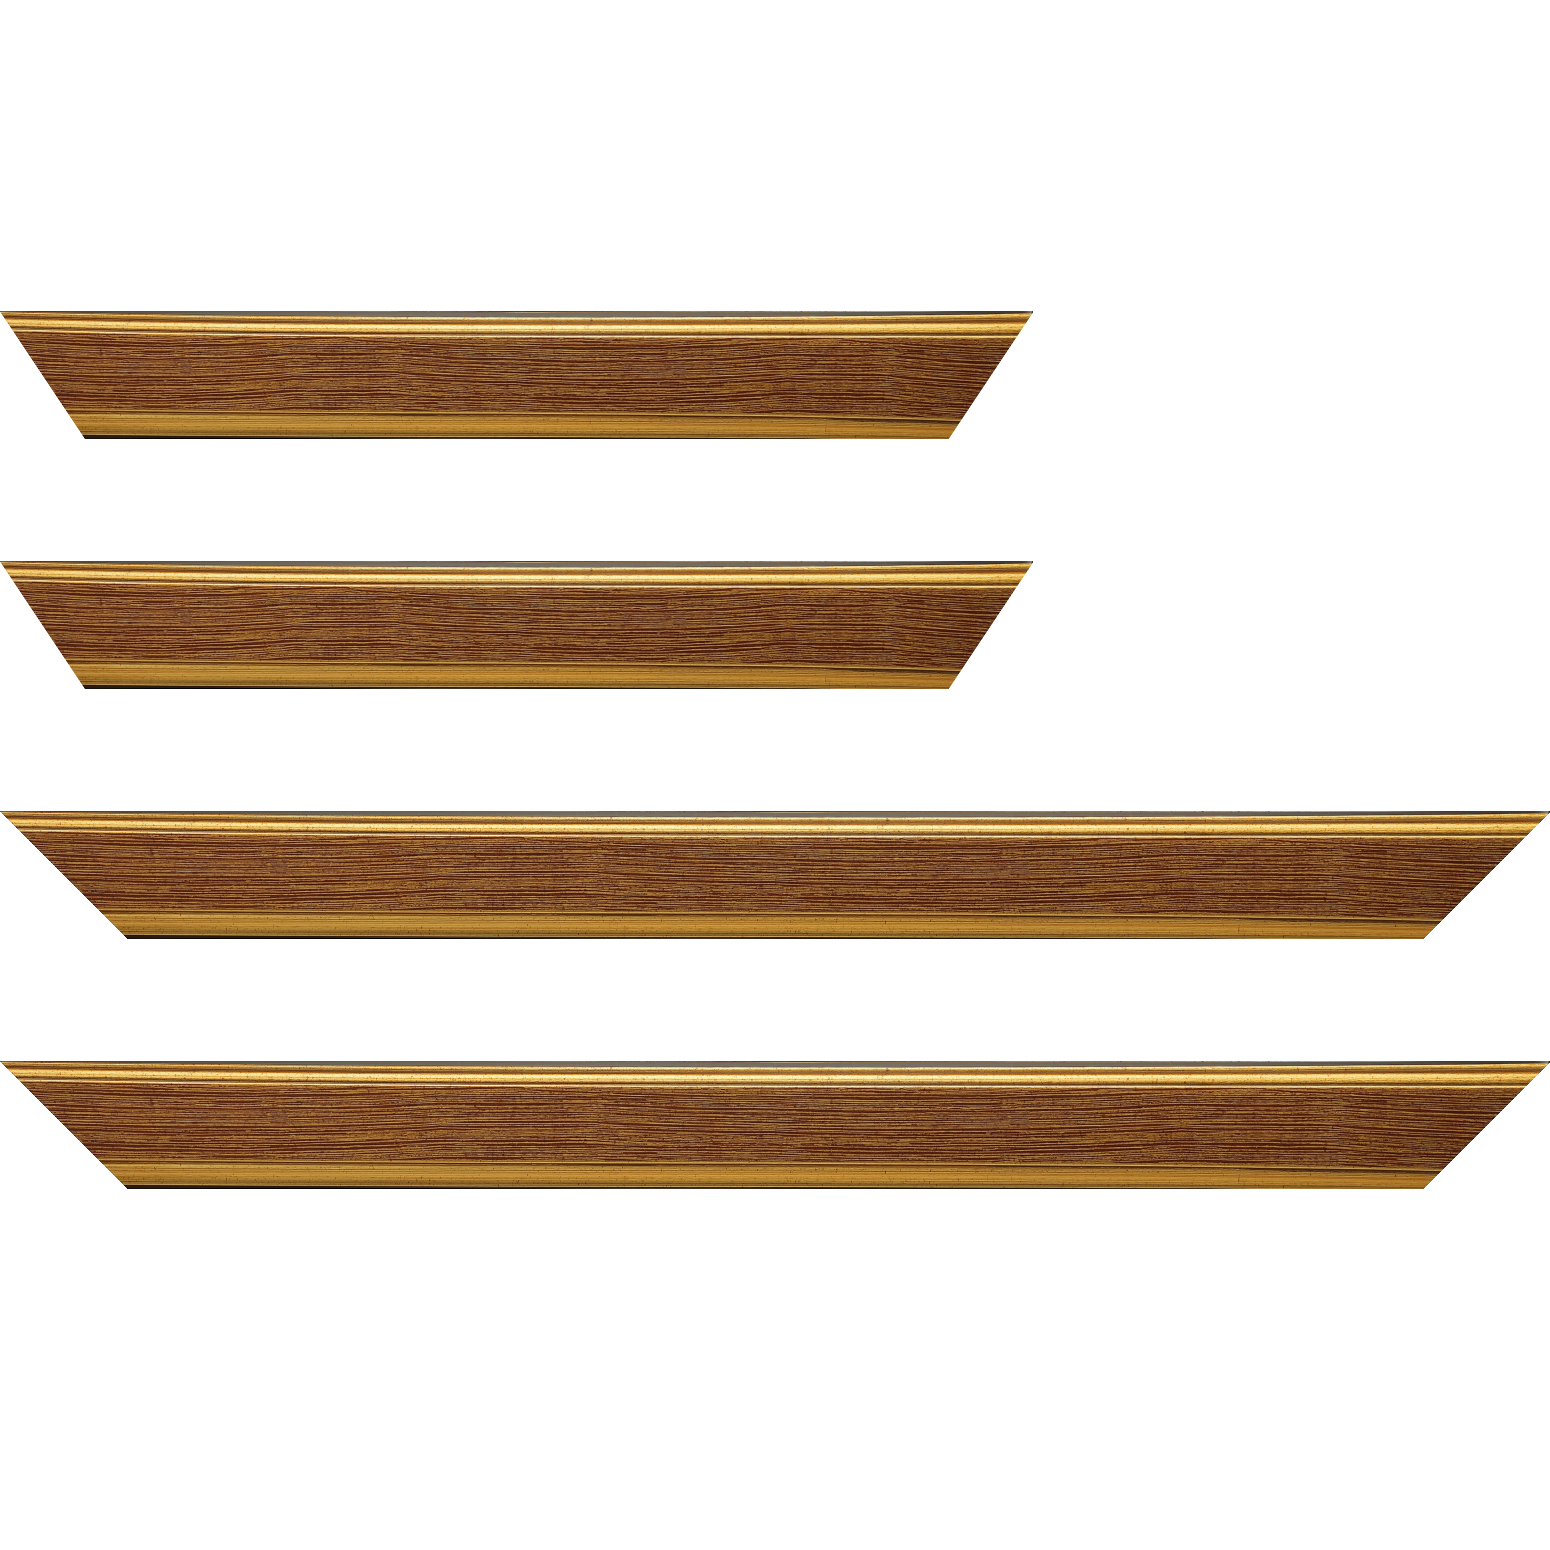 Baguette bois profil plat largeur 3.5cm couleur or fond bordeaux filet or - 41x27